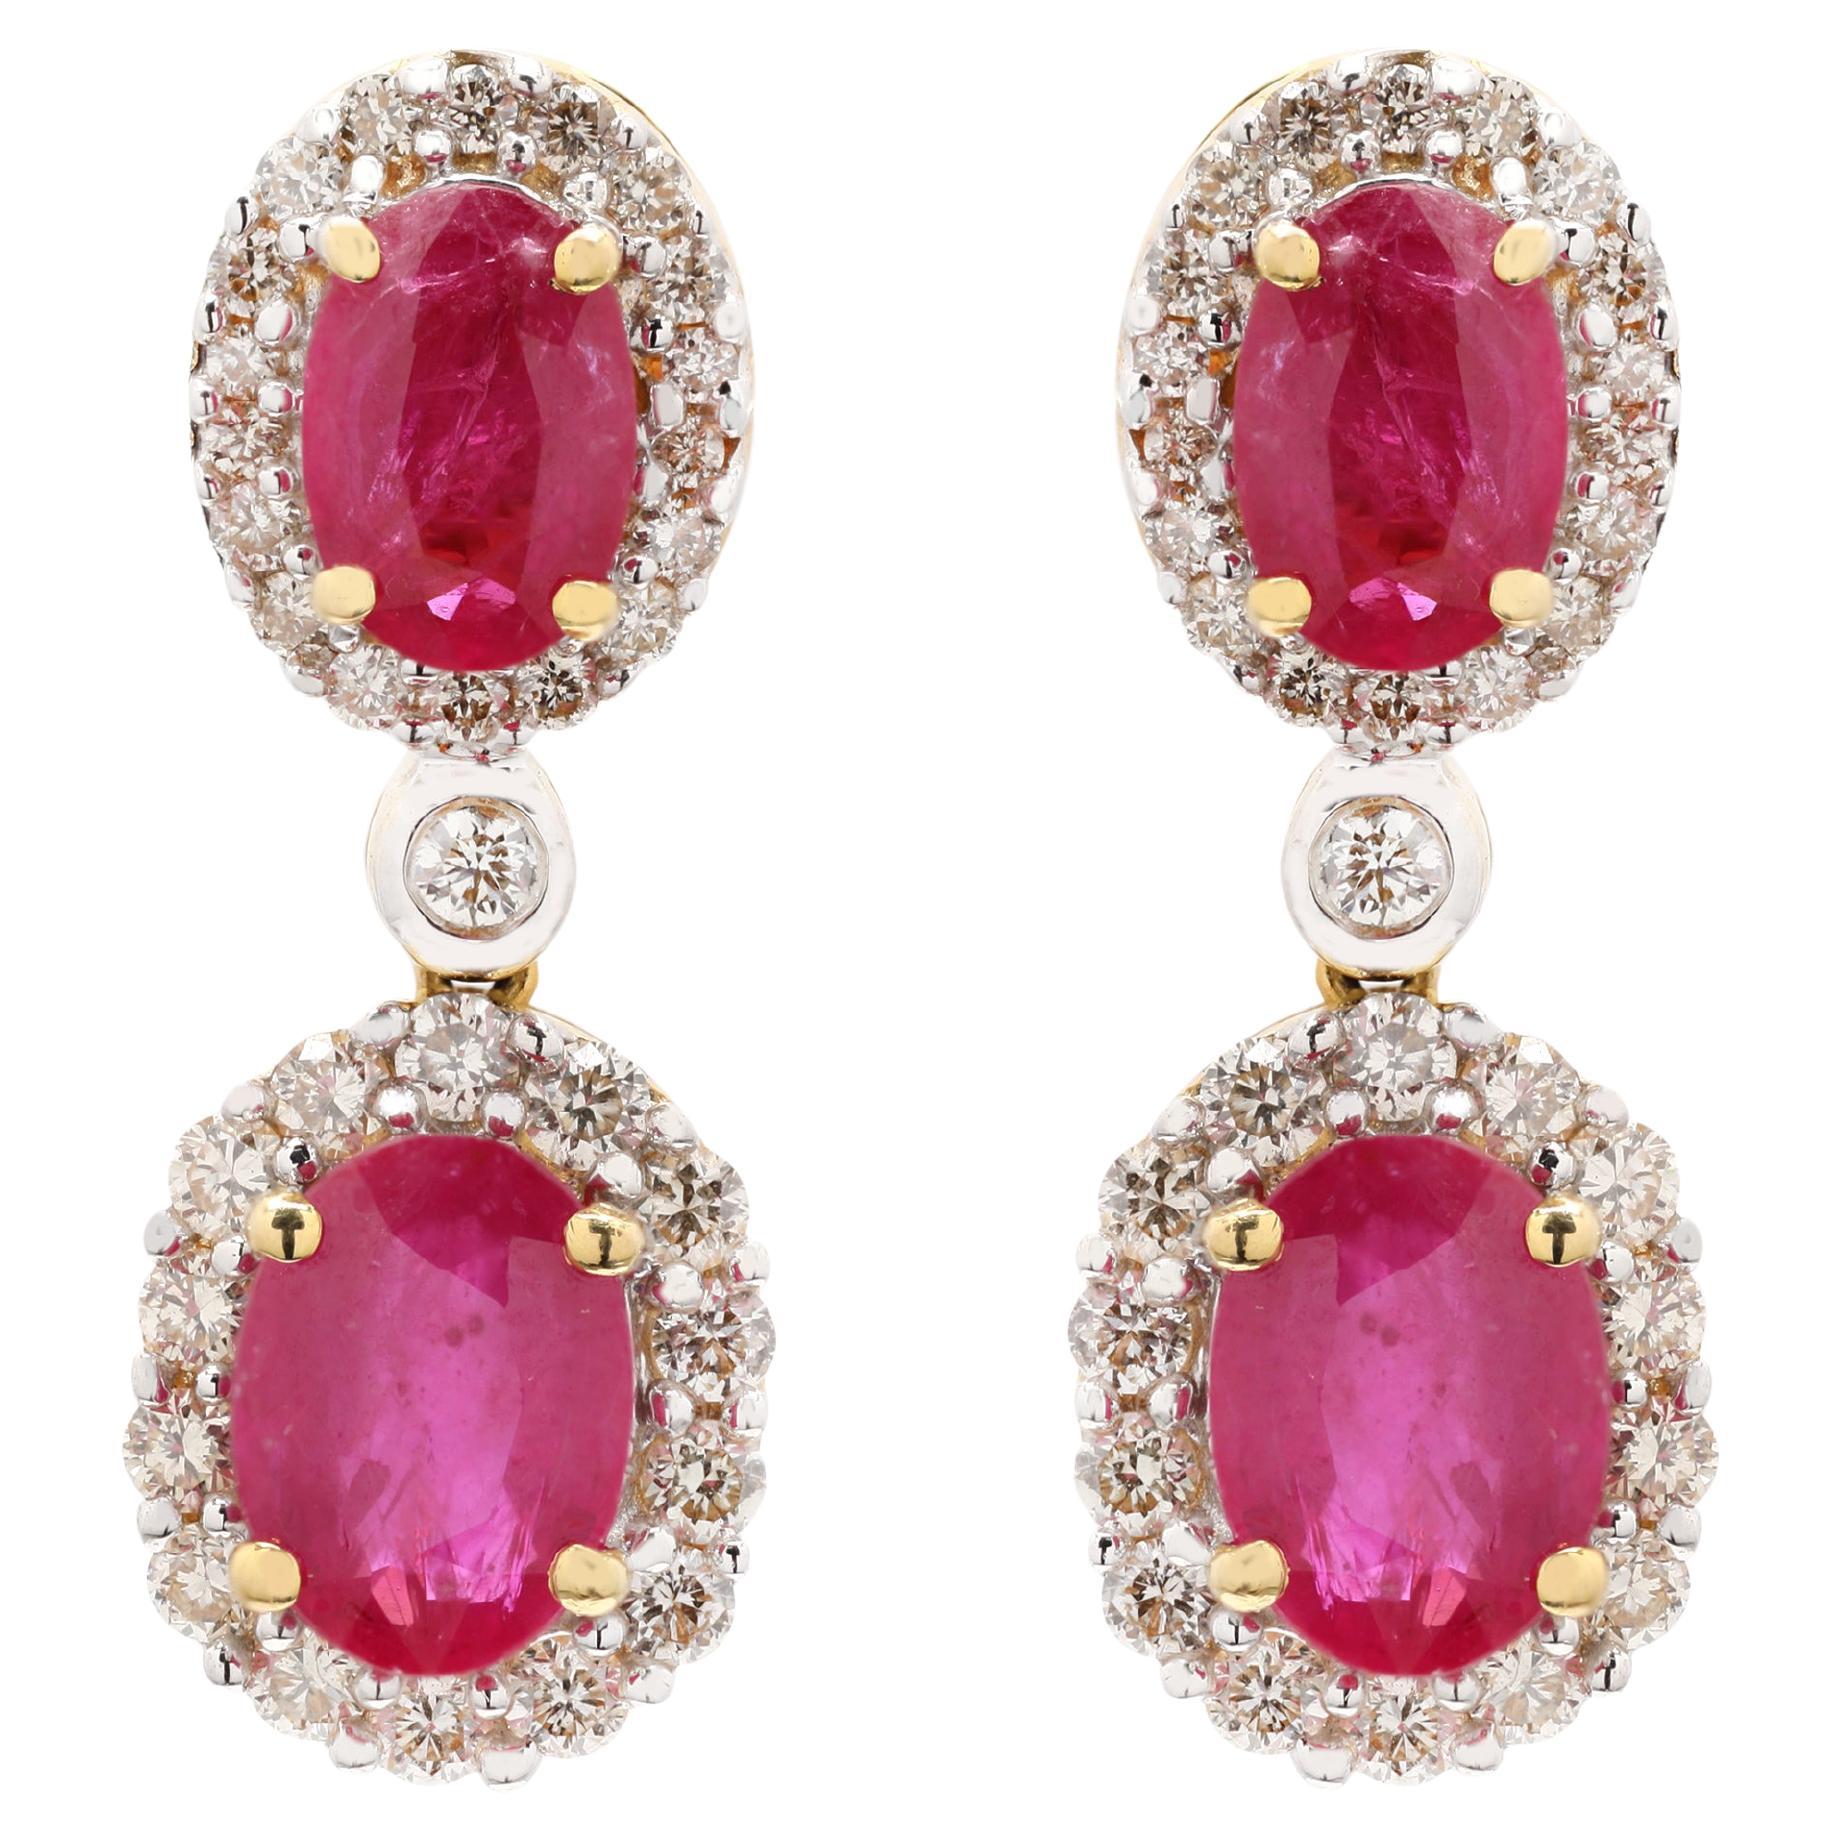 Ruby Dangle Drop Earrings with Diamonds Set in 18k Yellow Gold Wedding Earrings